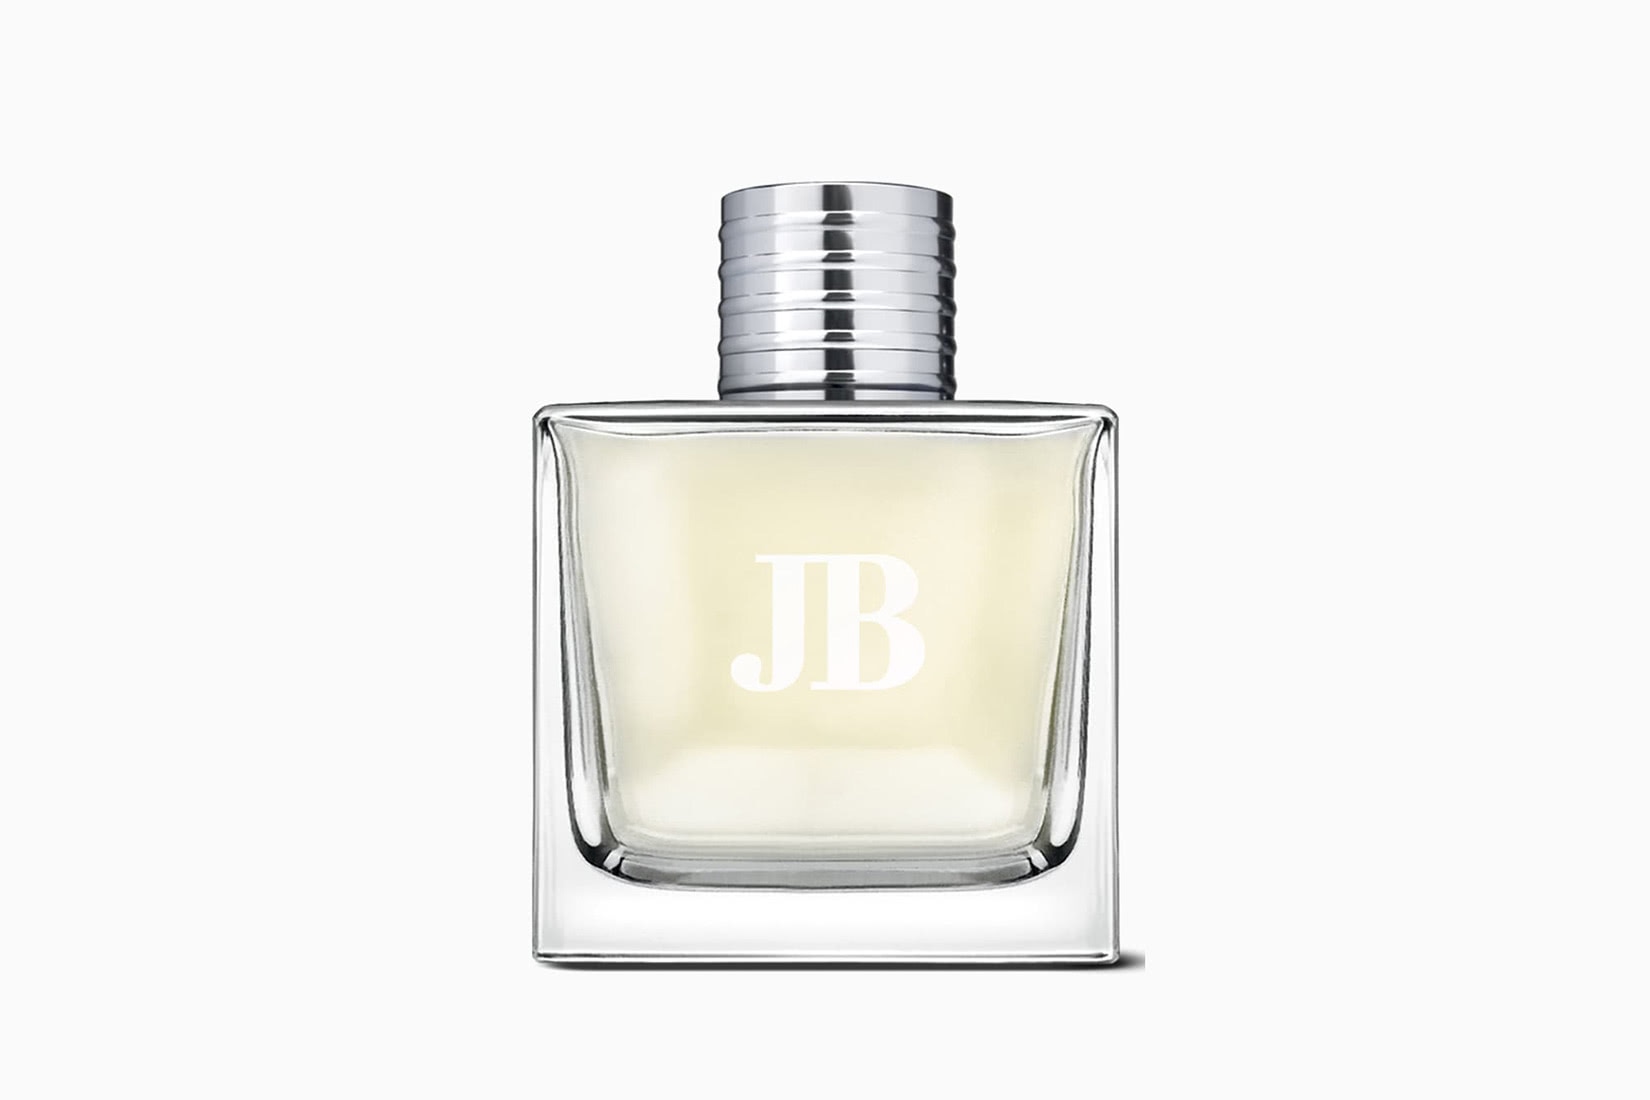 Meilleure eau de cologne pour homme Jack Black JB Eau de Parfum - Luxe Digital